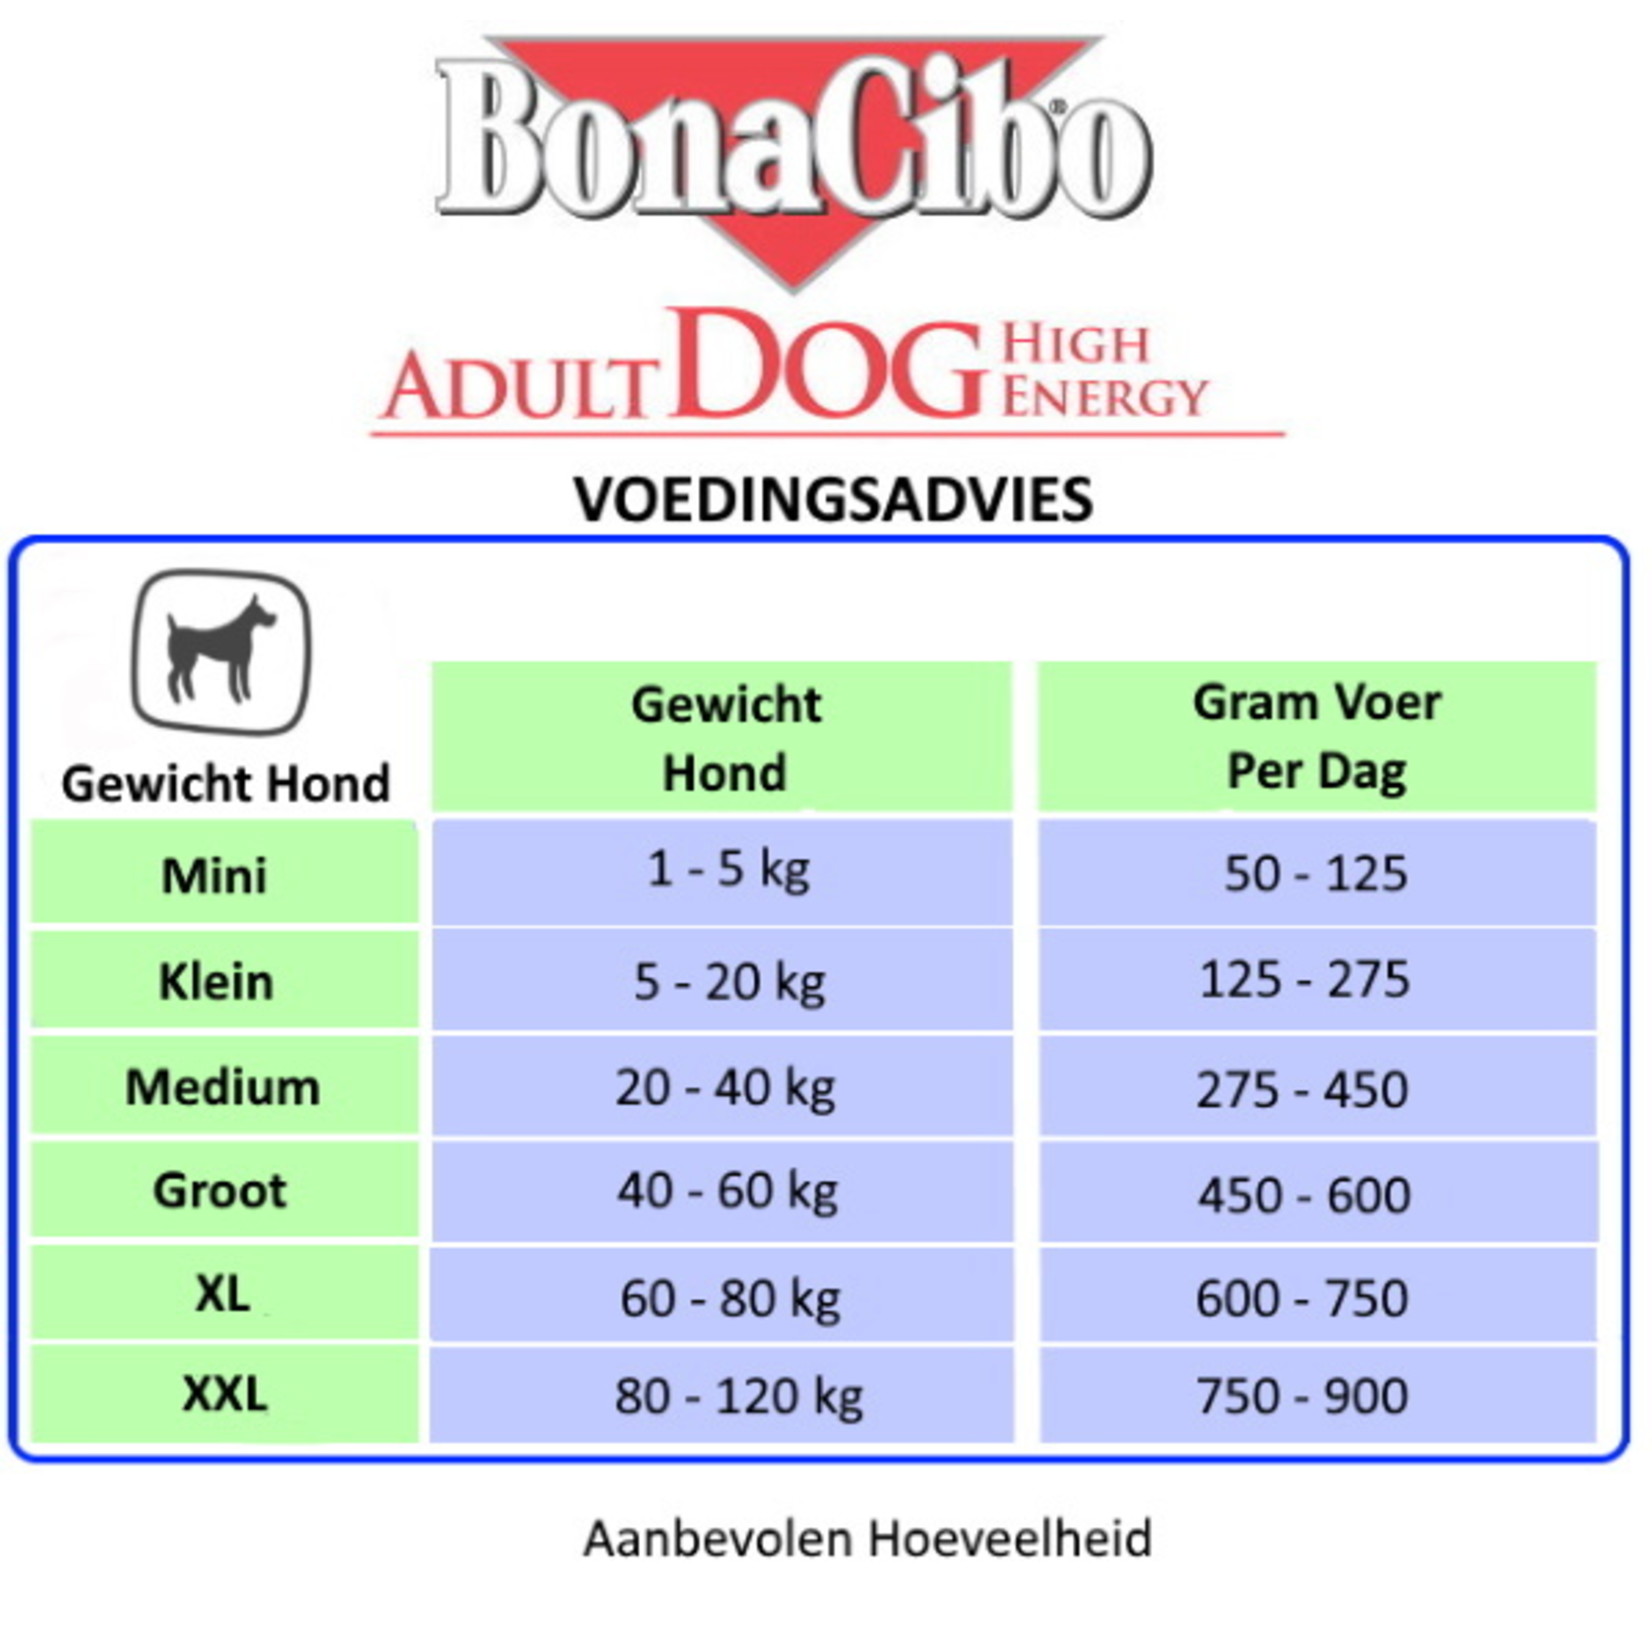 Bonacibo Bonacibo Dog high energy